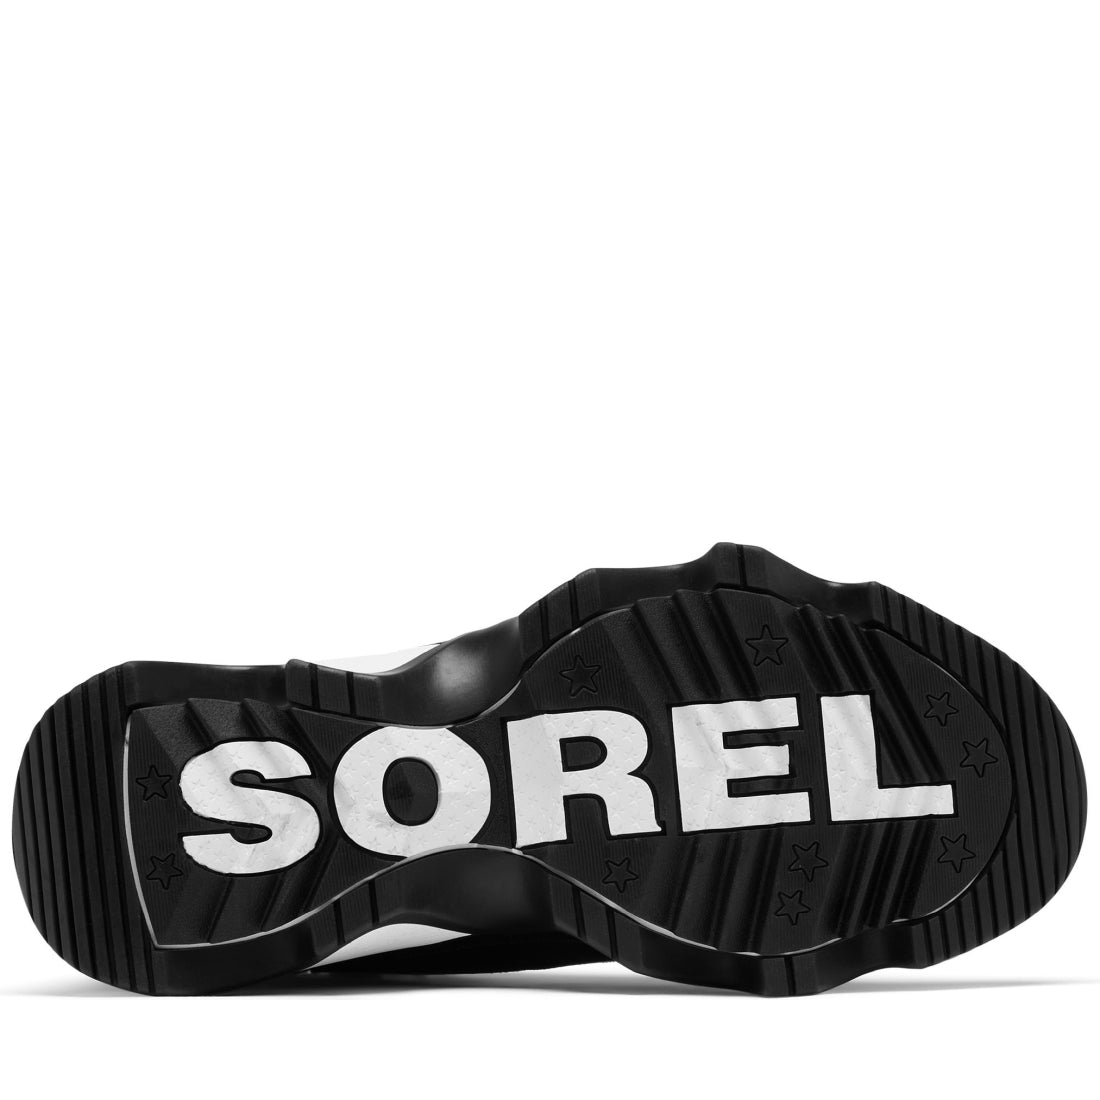 Sorel womens 010 black, sea salt kinetic impact booties | Vilbury London